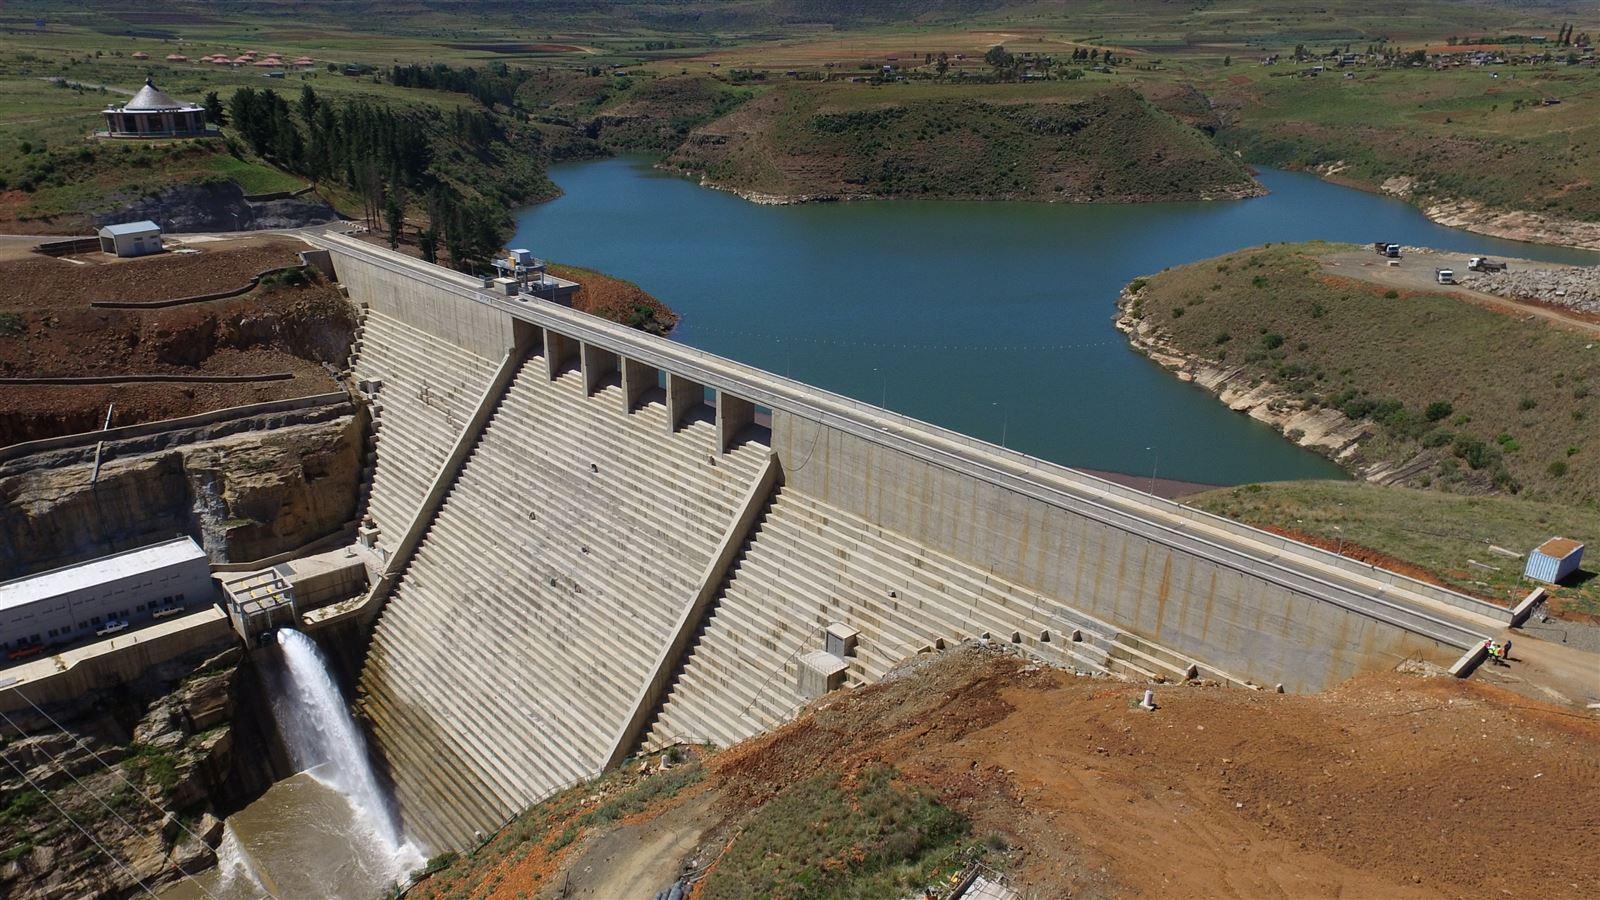 MCA Metolong Dam Overview